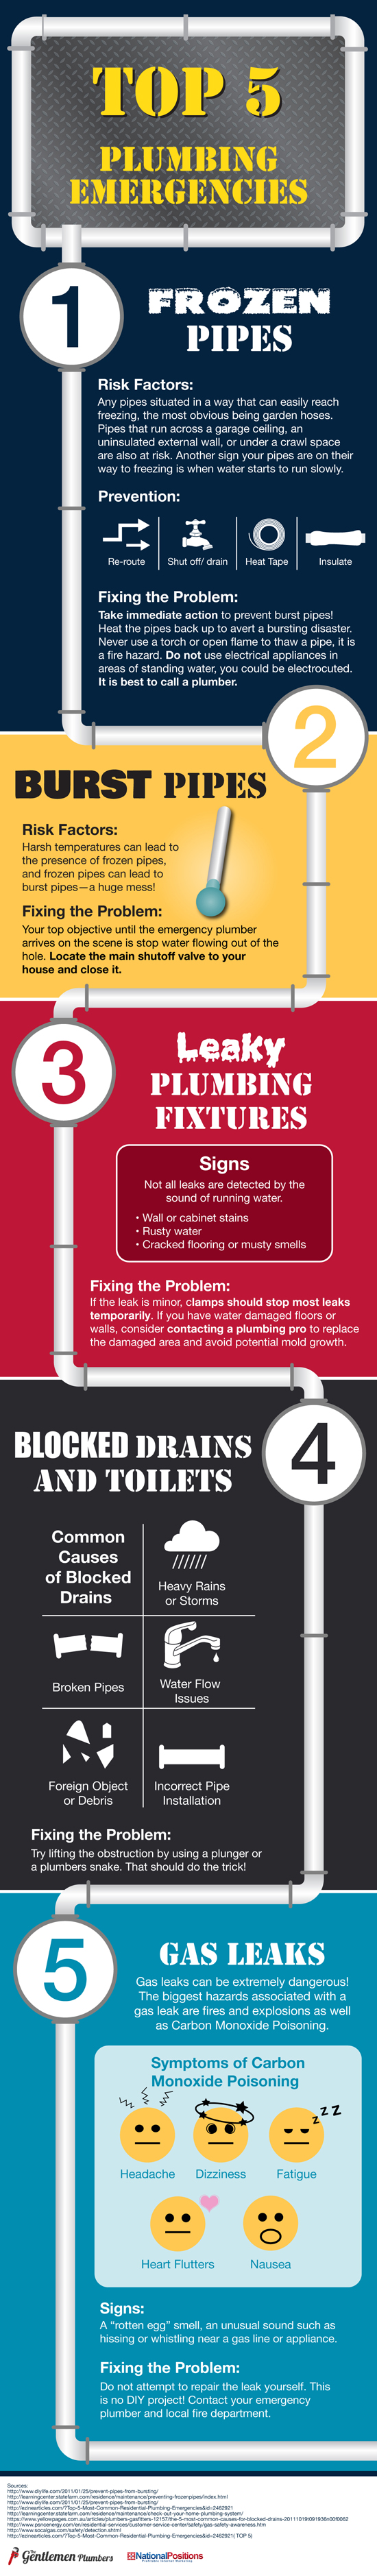 Infographic showing the top 5 plumbing emergencies